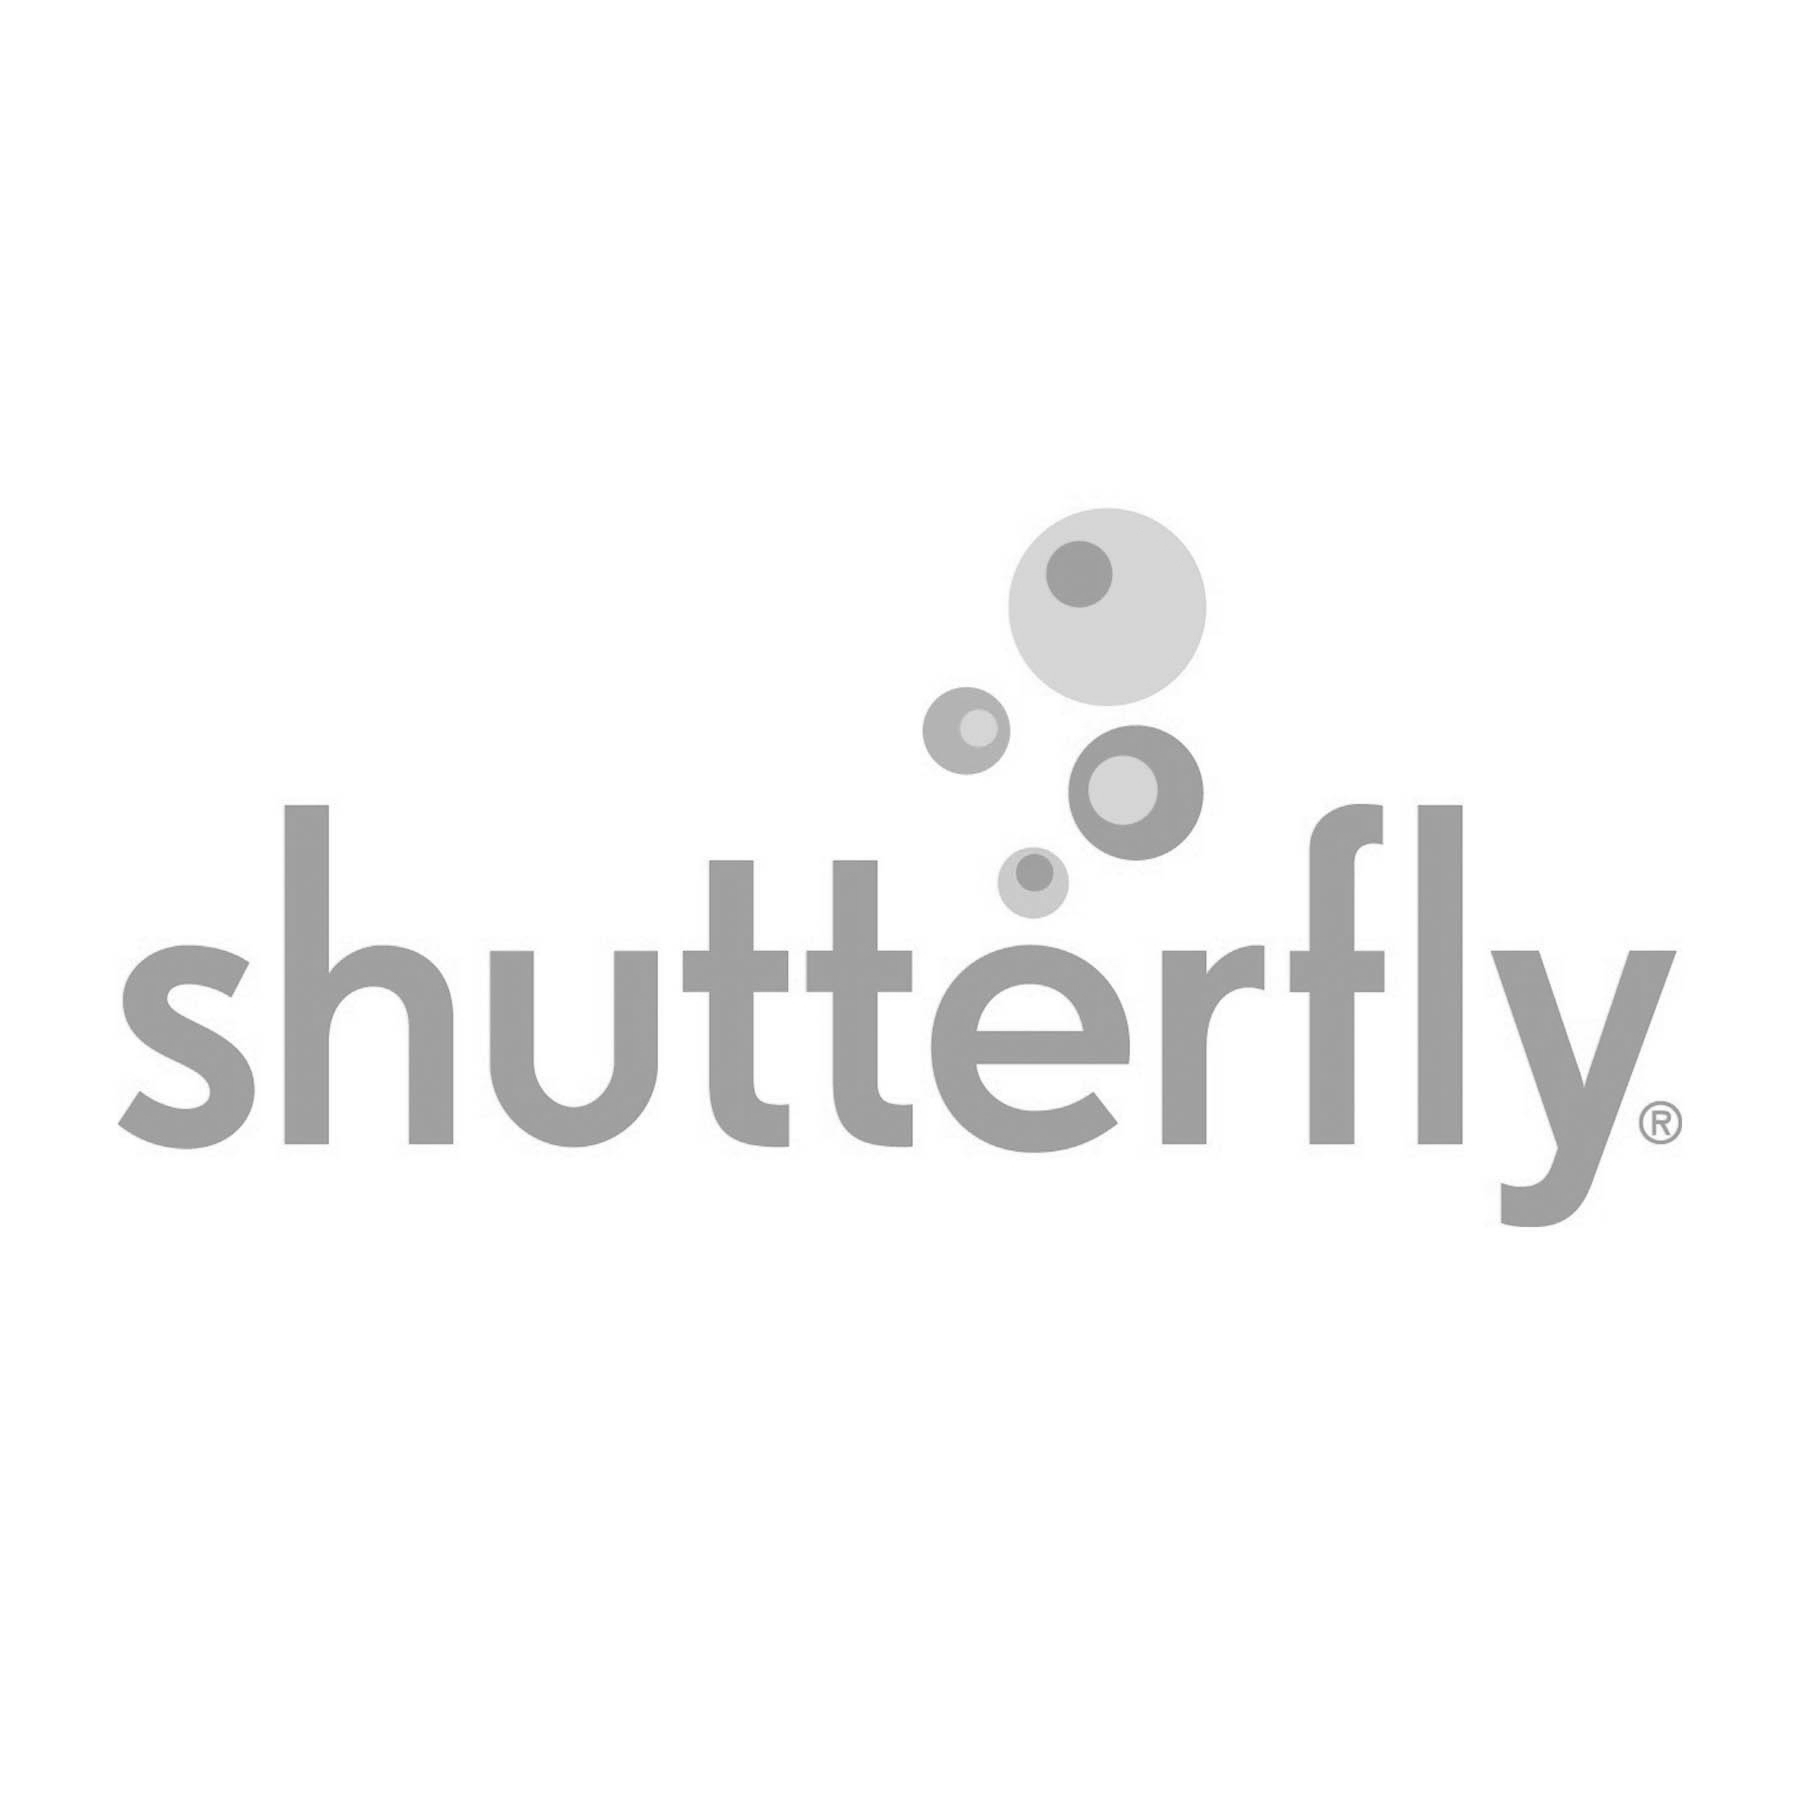 shutterfly.jpg